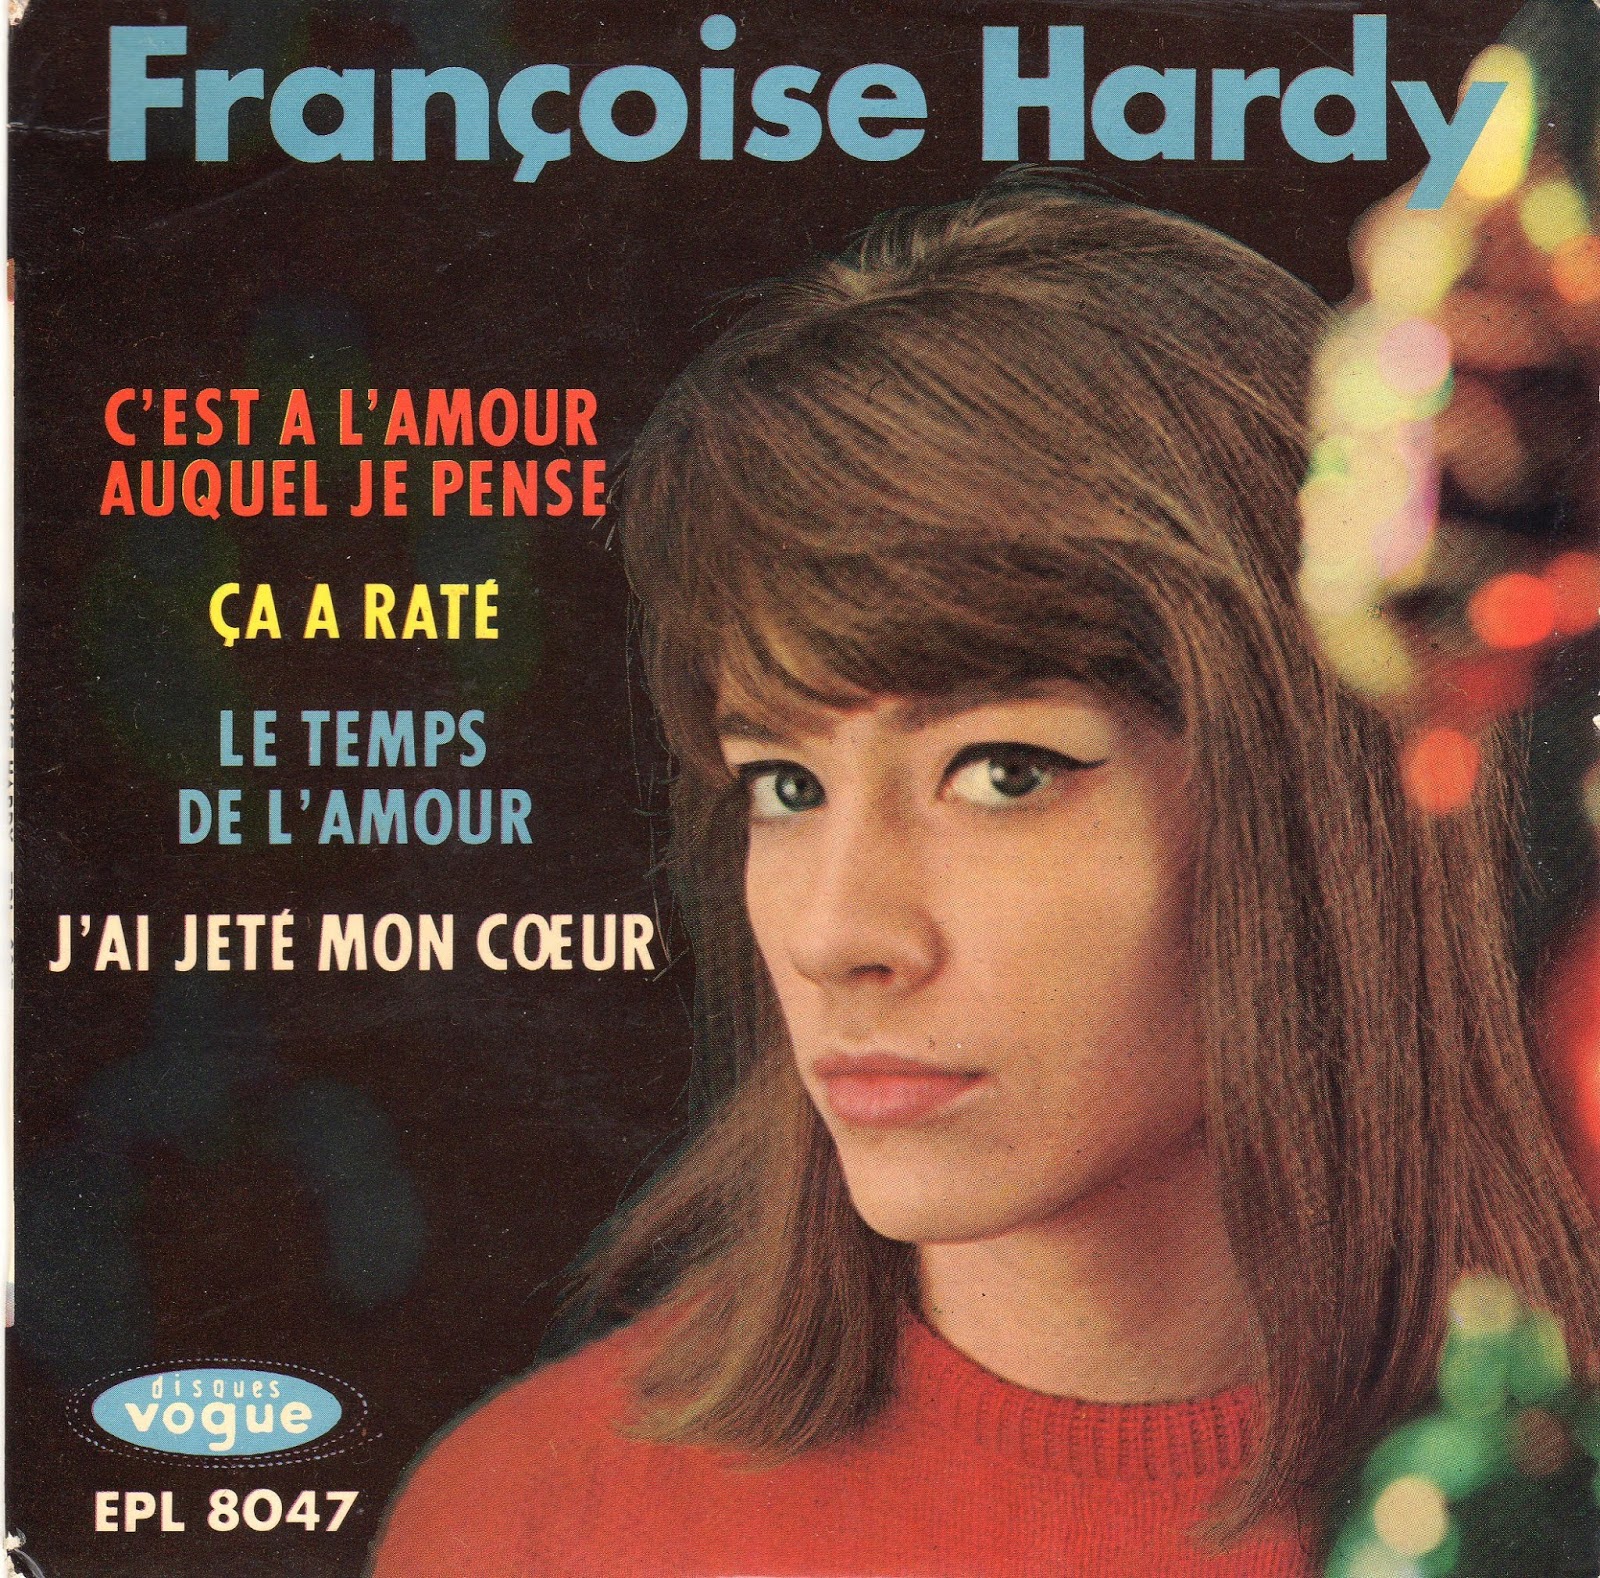 Le temps de l amour. Francoise Hardy обложка. Francoise Hardy фото.